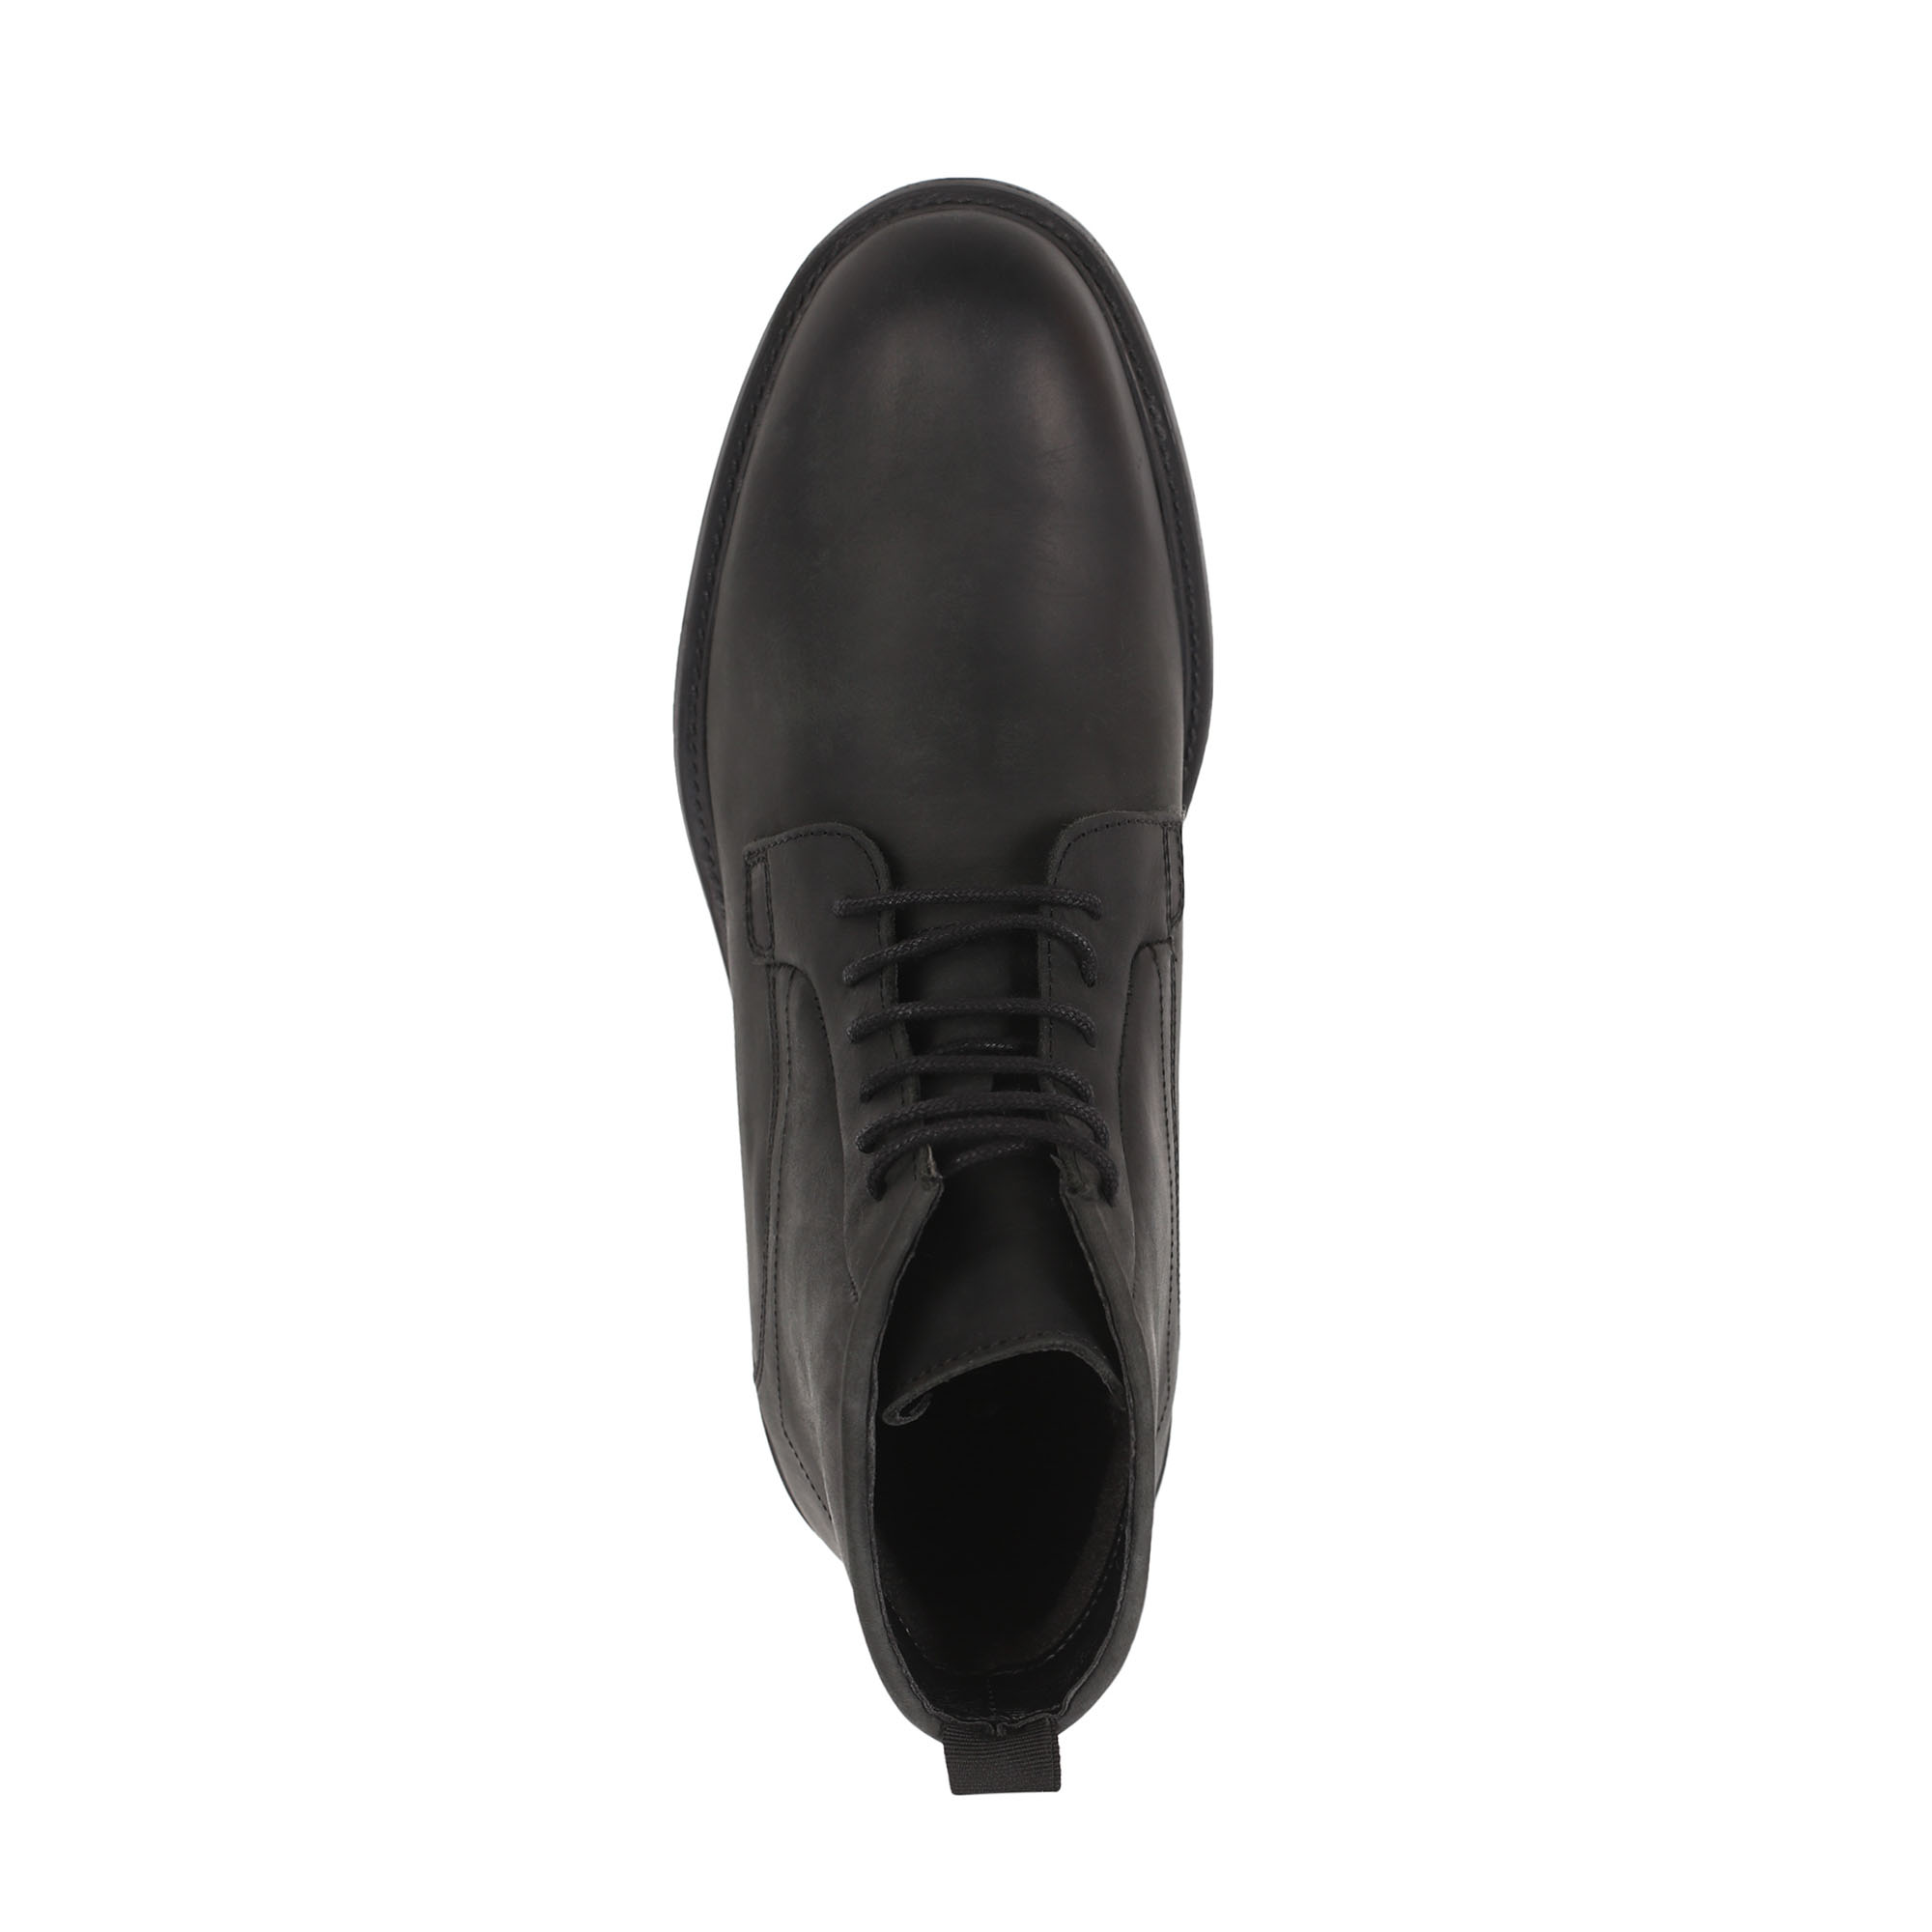 Ботинки Thomas Munz 569-029C-2102, цвет черный, размер 41 - фото 5